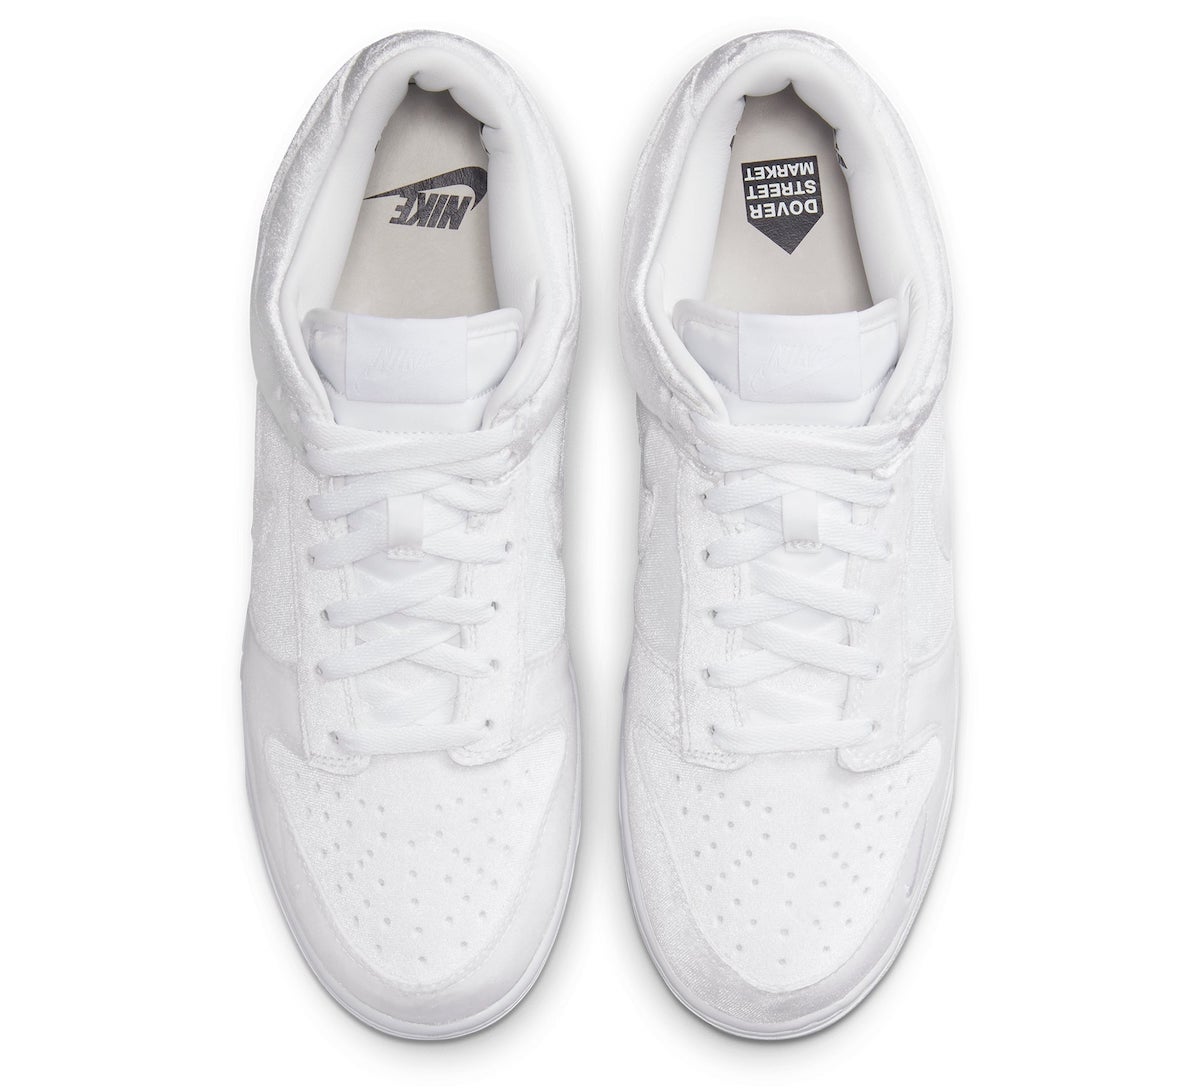 Dover Street Market DSM Nike Dunk Low Velvet White DH2686-100 Release Info Price